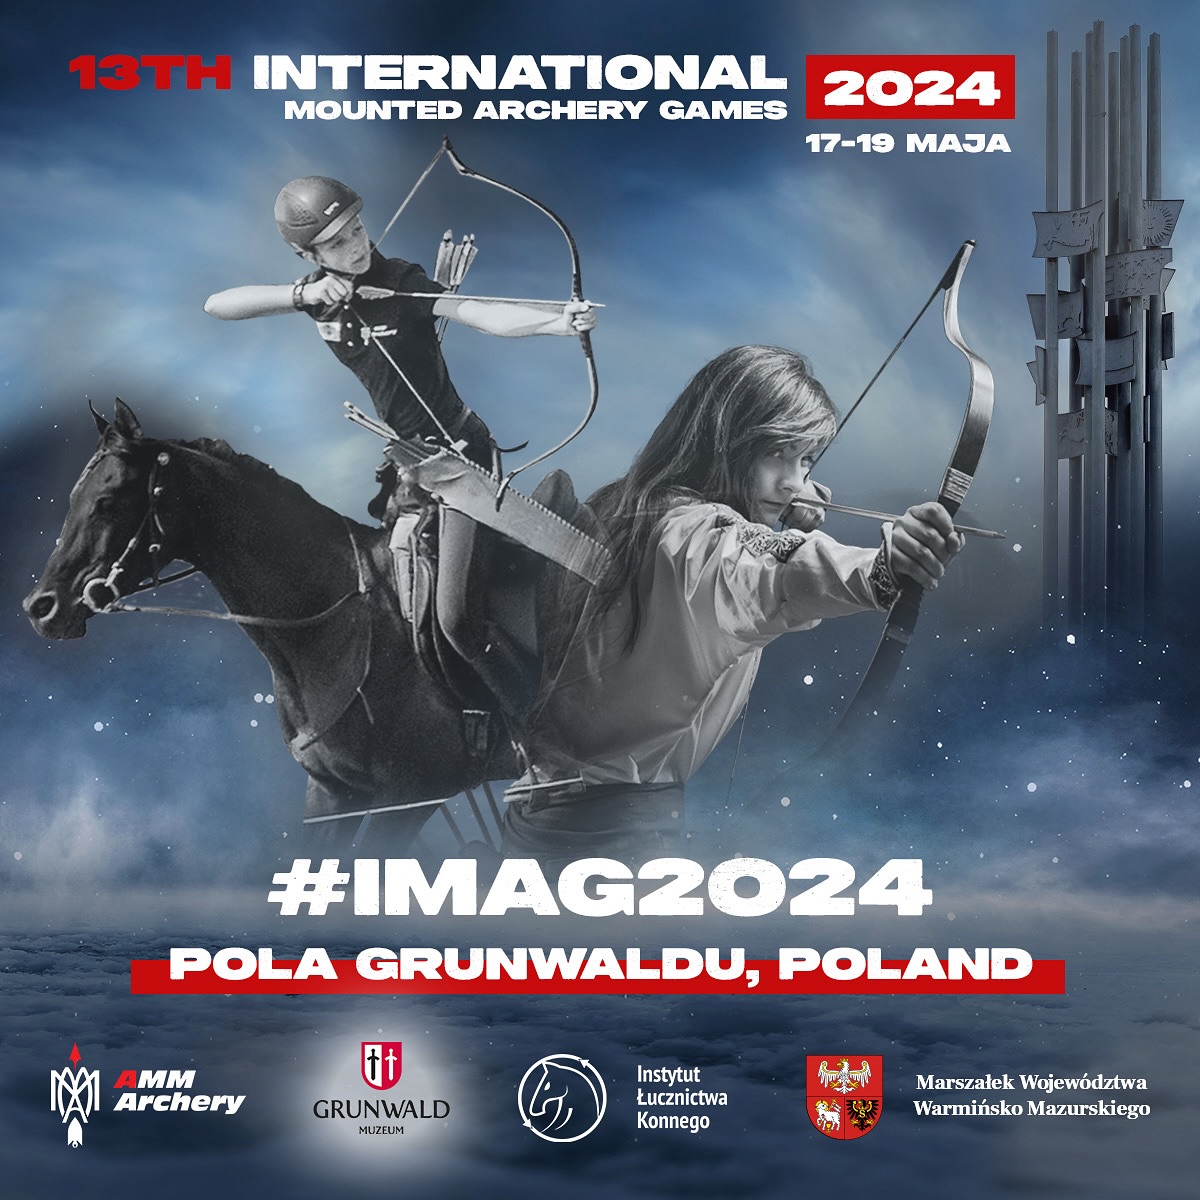 Plakat zapraszający w dniach 17-19 maja 2024 r. do Grunwaldu na Majówkę z Łukiem i Koniem – Międzynarodowe Zawody Łucznictwa Konnego Grunwald 2024.